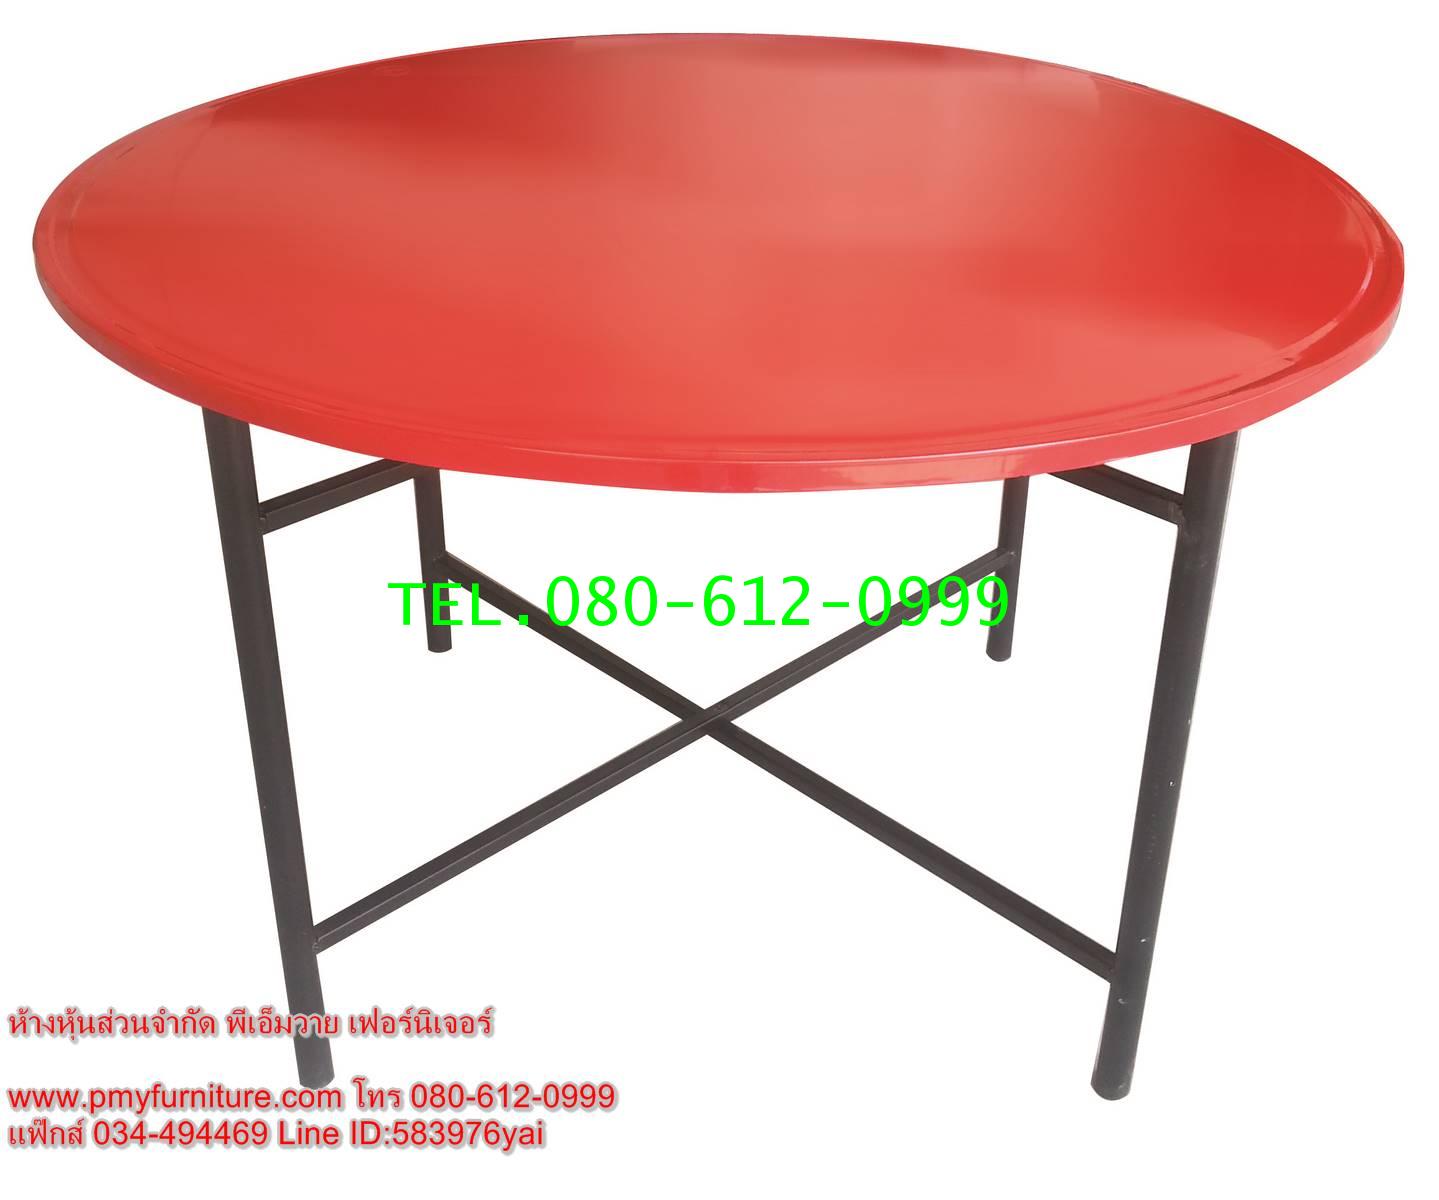 pmy31-2 โต๊ะพับหน้าเหล็กกลม ขนาด 120x75 ซม.